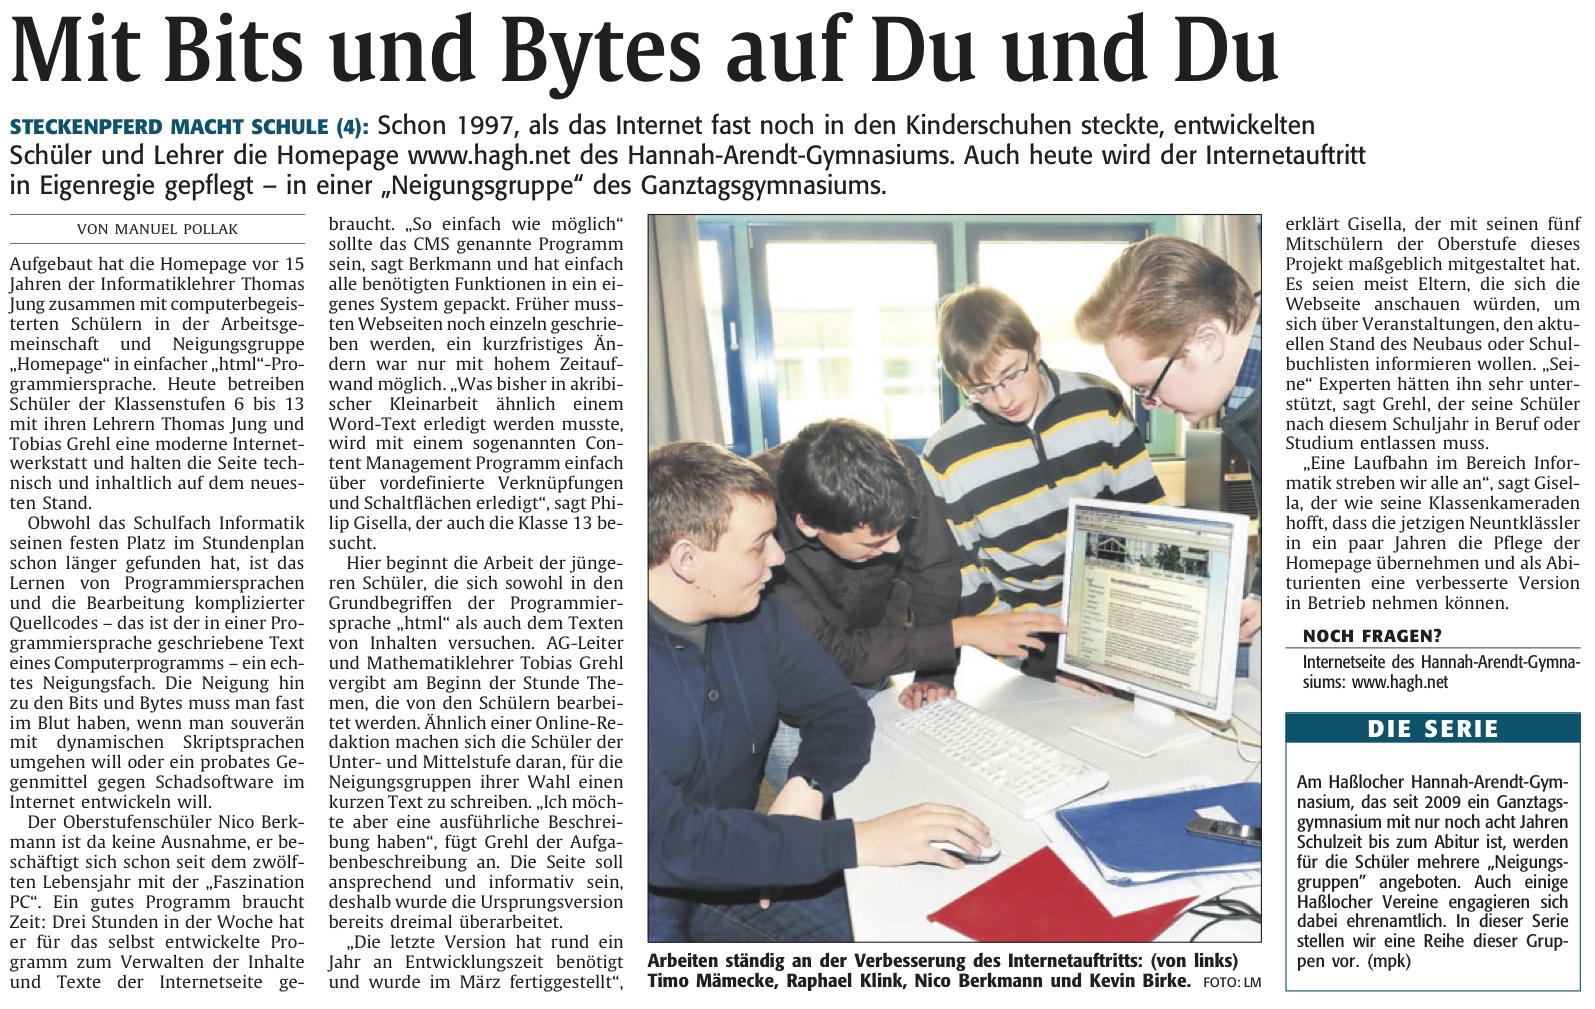 "Mit Bits und Bytes auf Du und Du" aus der Rheinpfalz am 26.01.2012